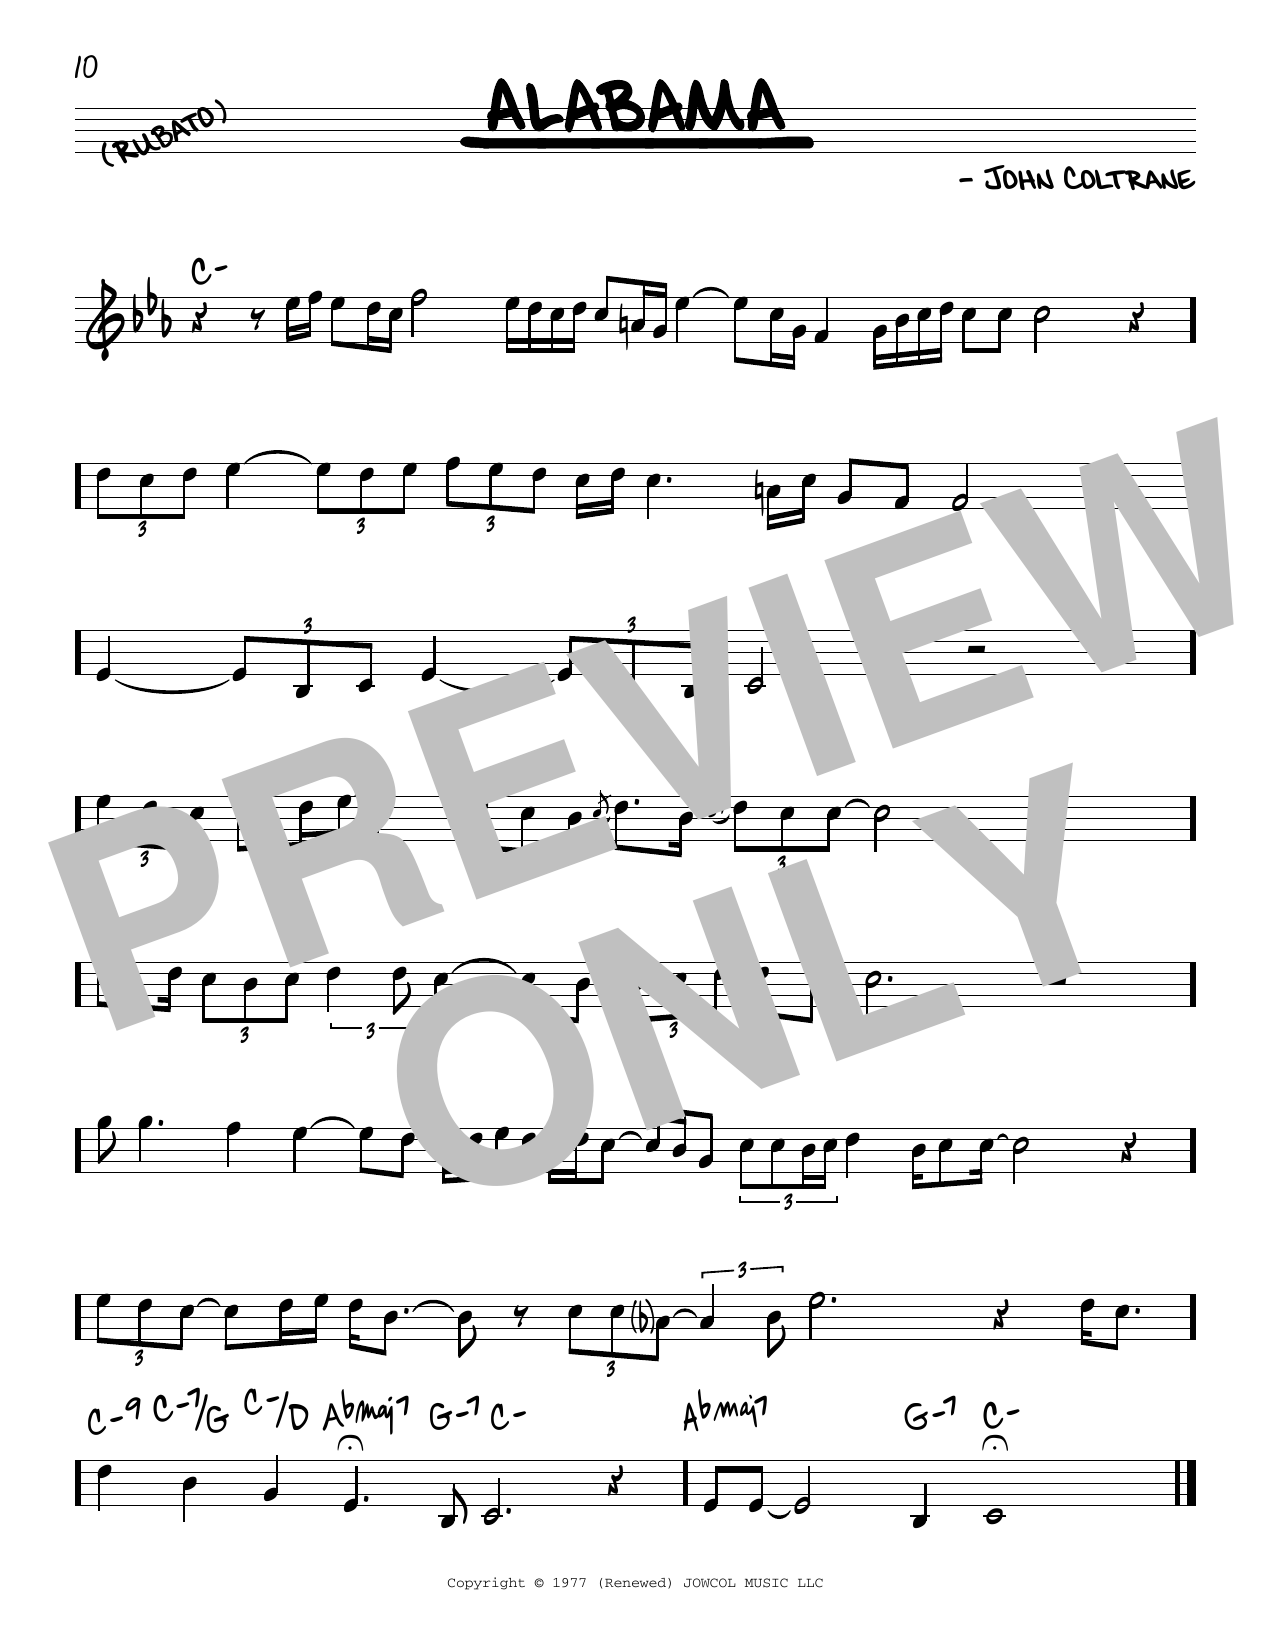 Download John Coltrane Alabama Sheet Music